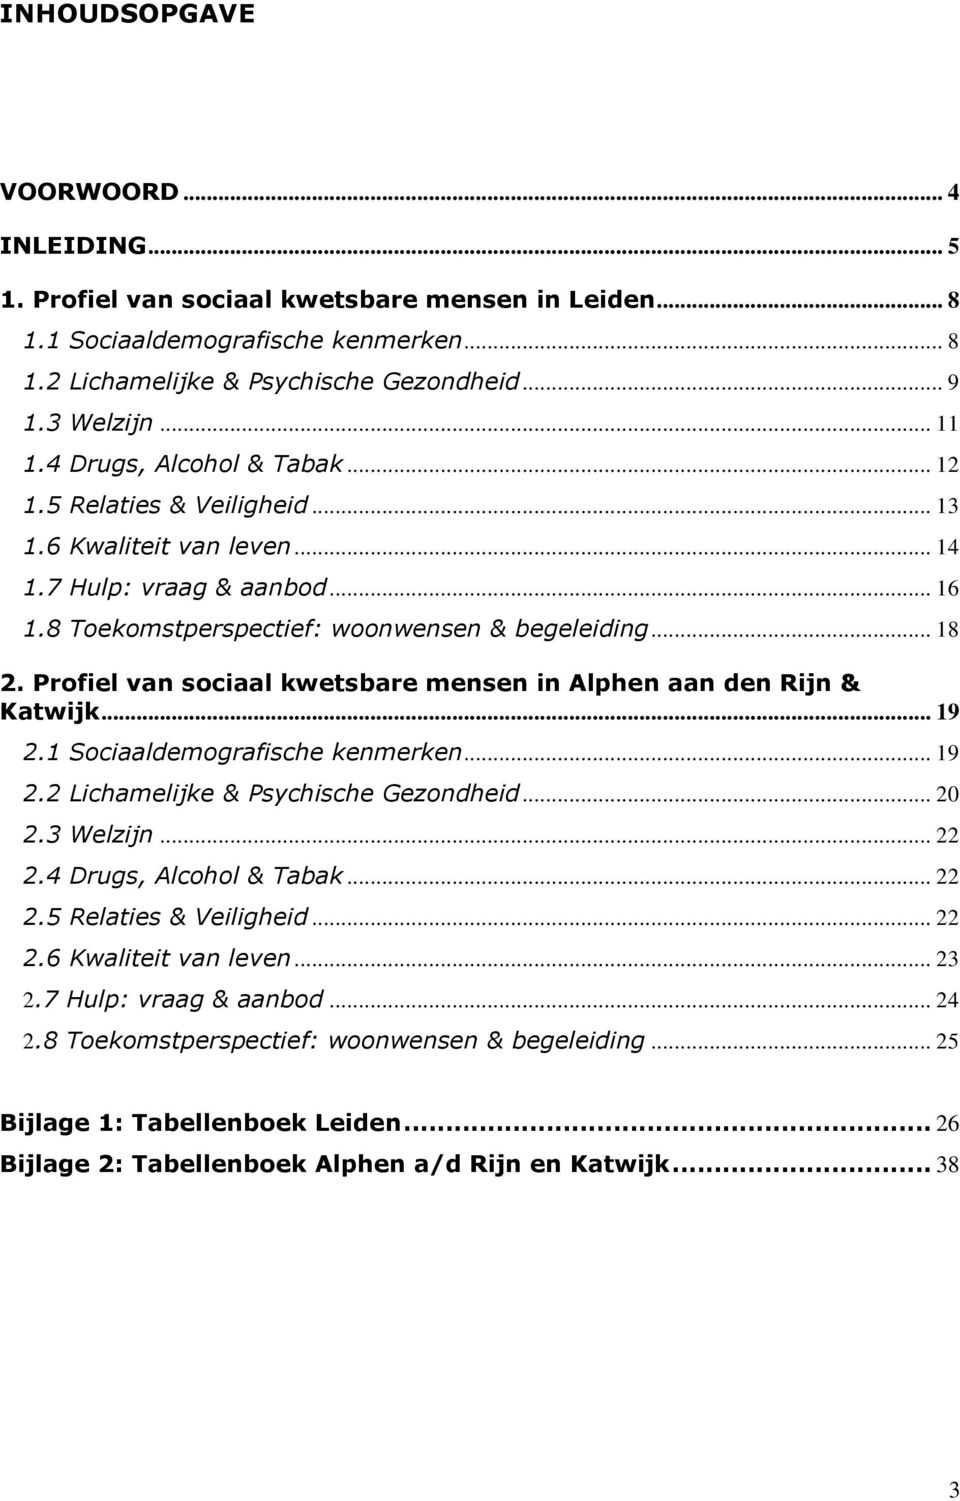 Profiel van sociaal kwetsbare mensen in Alphen aan den Rijn &... 19 2.1 Sociaaldemografische kenmerken... 19 2.2 Lichamelijke & Psychische Gezondheid... 20 2.3 Welzijn... 22 2.